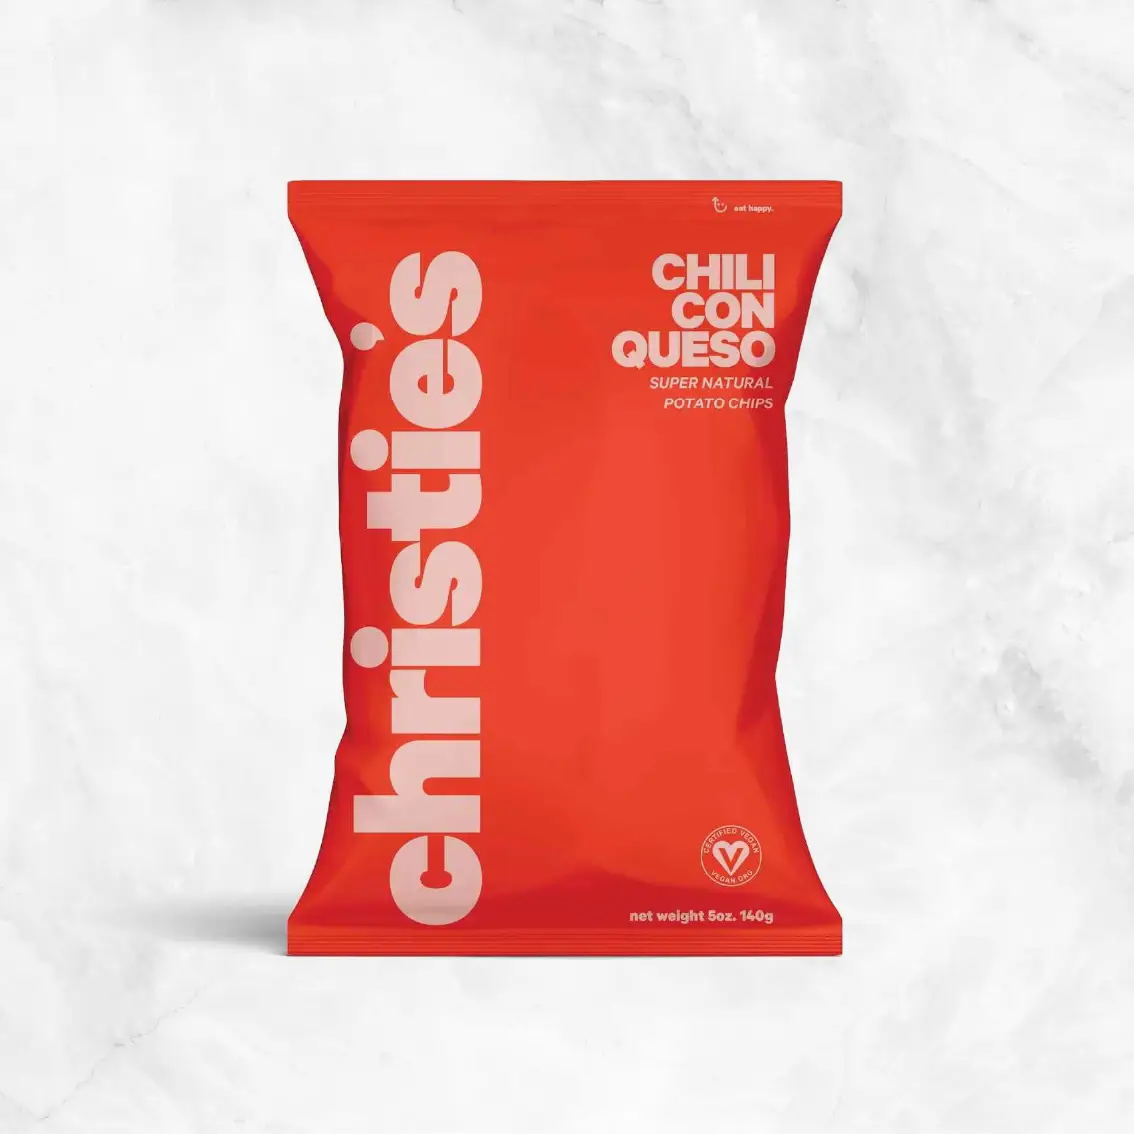 Chili Con Queso Potato Chips Delivery